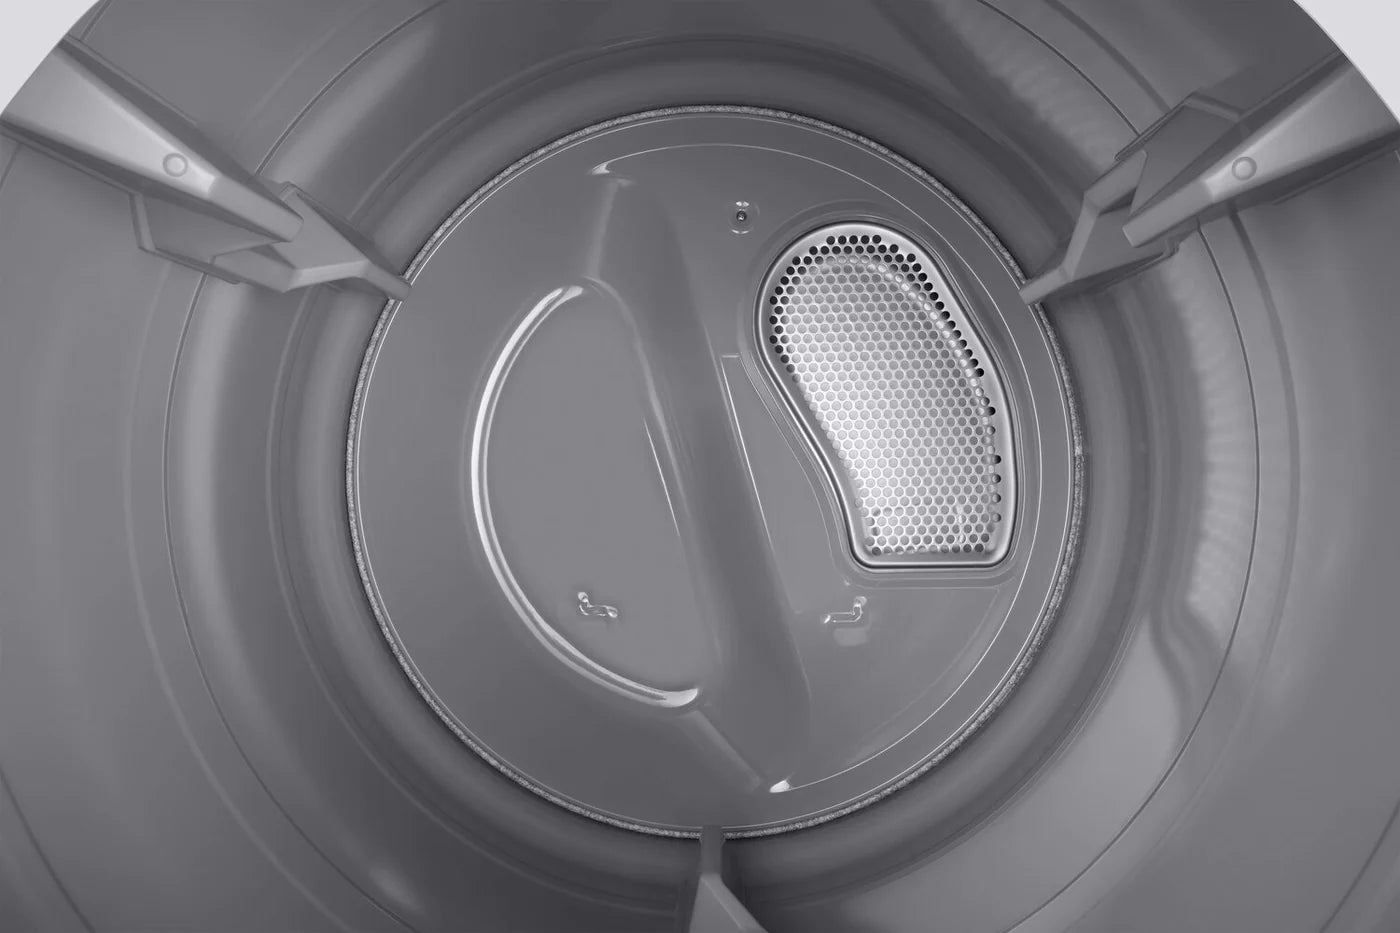 Samsung Dryer 27" White DVE45T6005W